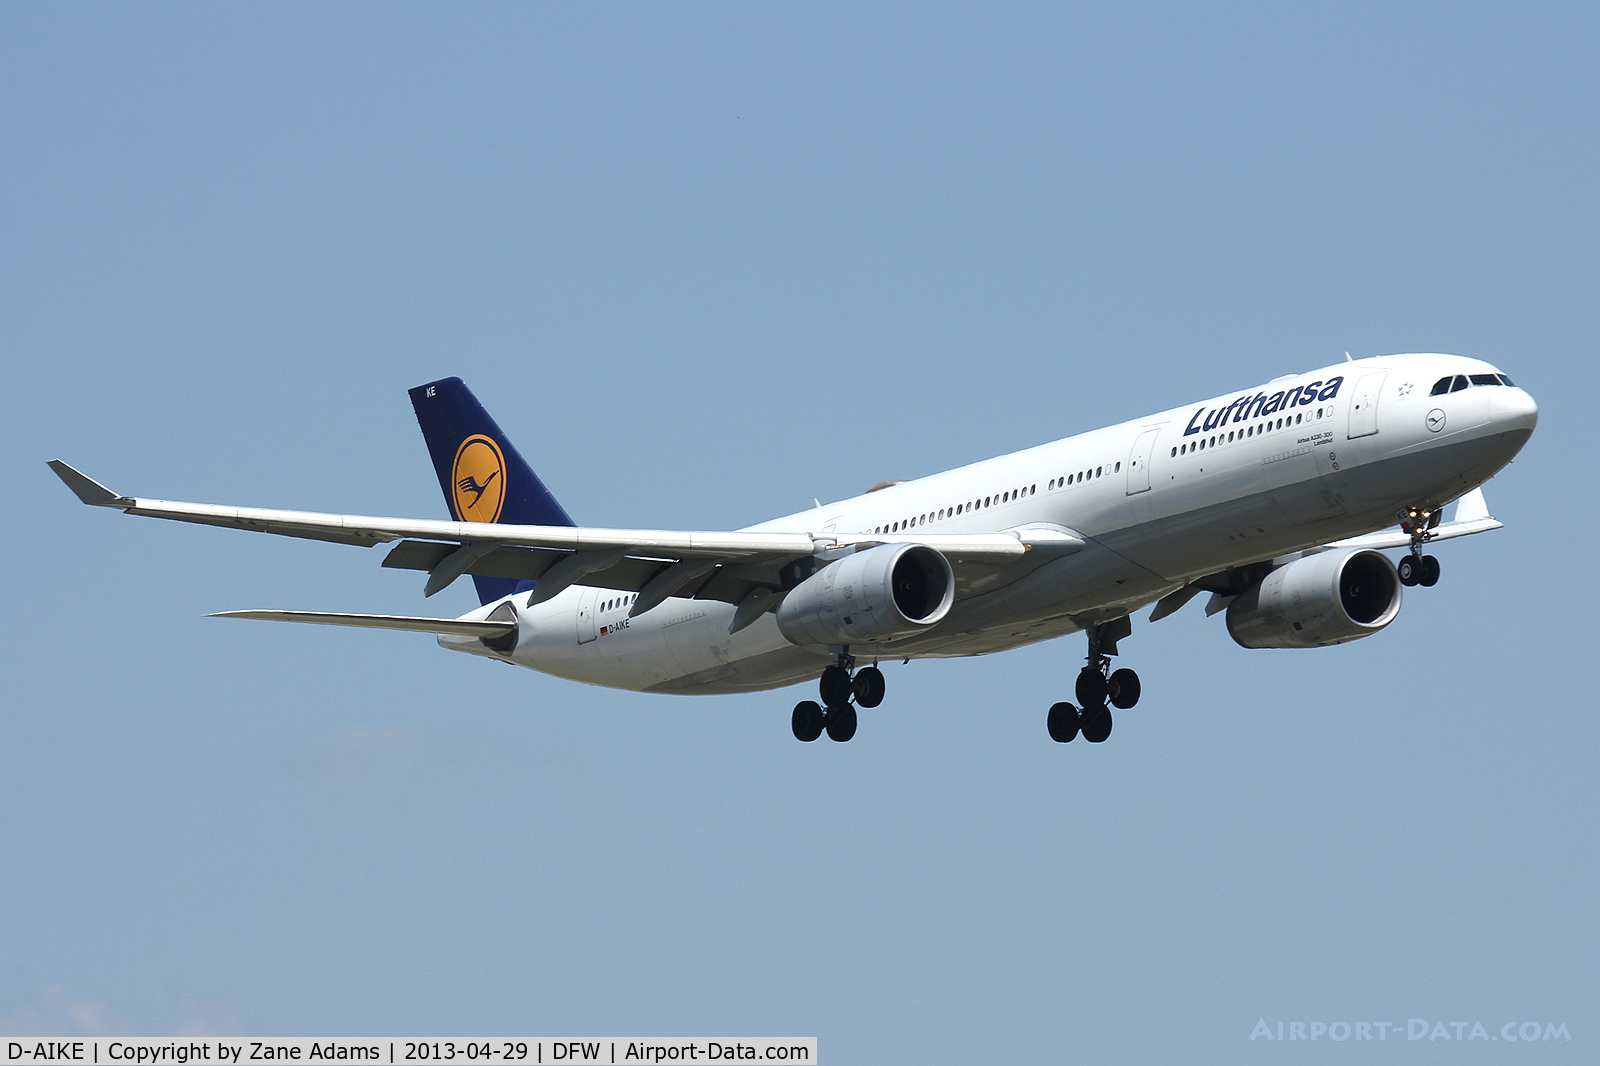 D-AIKE, 2004 Airbus A330-343X C/N 636, Lufthansa landing at DFW Airport